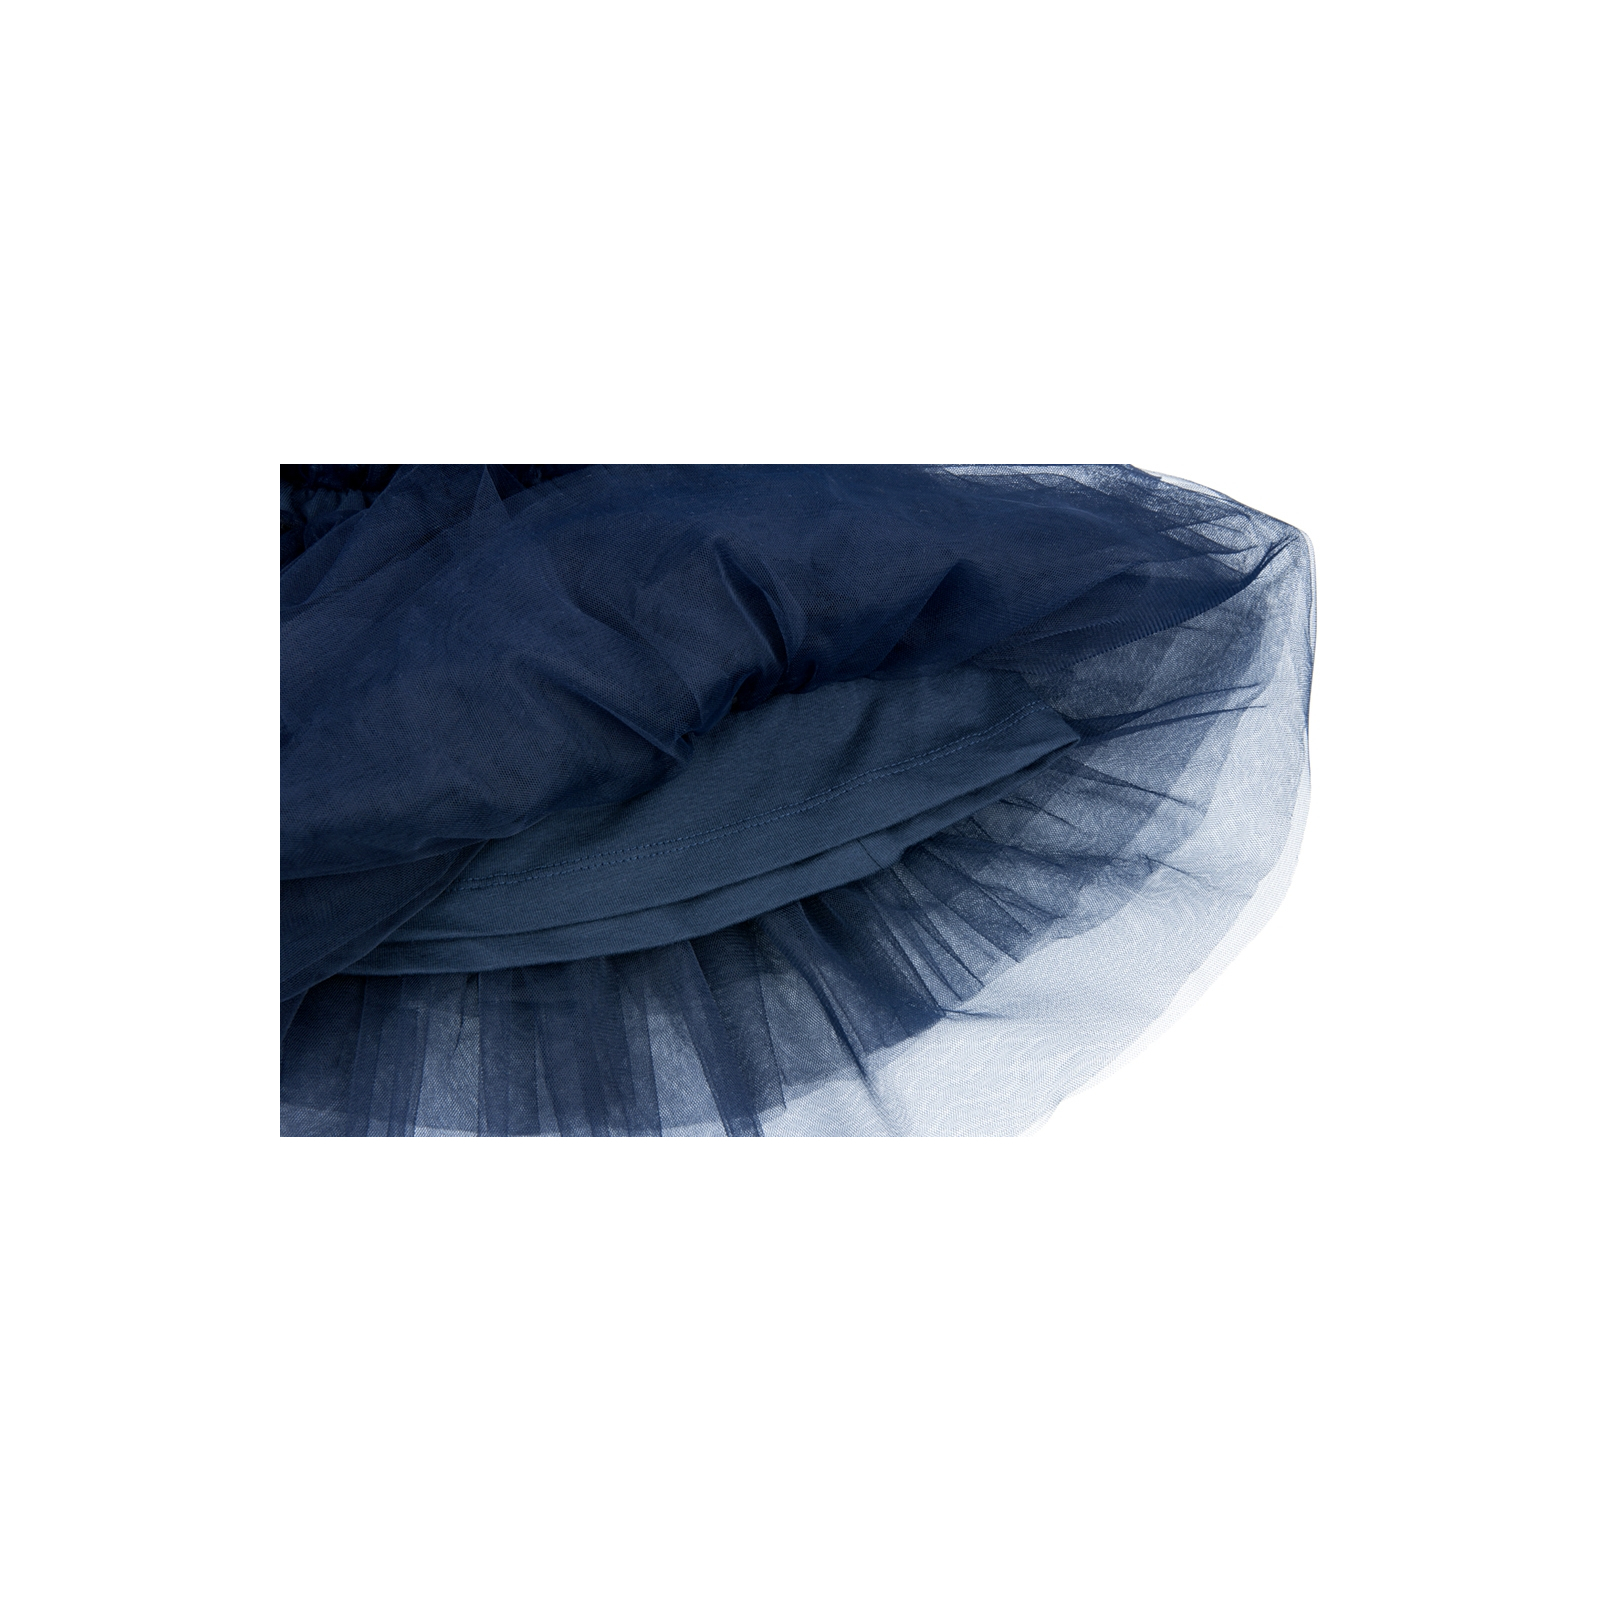 Юбка Breeze фатиновая многослойная (9938-134G-blue) изображение 3